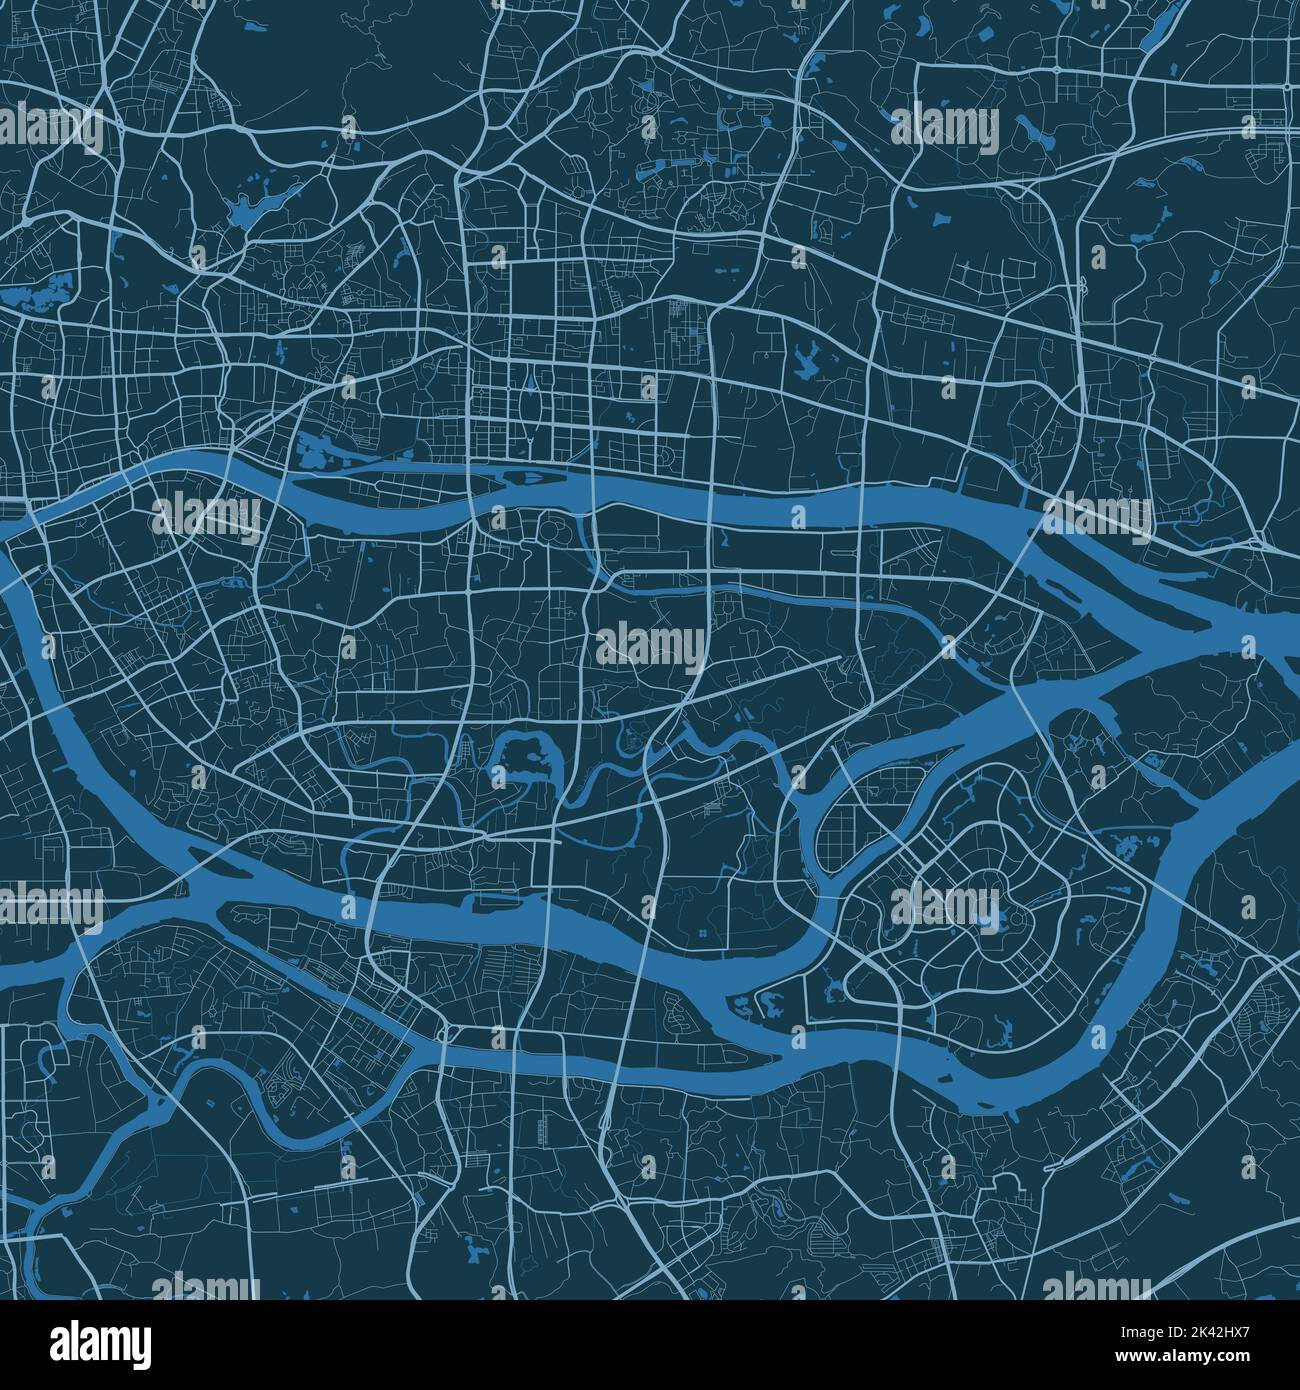 Detaillierte Vektorkarte Poster von Guangzhou Stadt Verwaltungsgebiet. Blaues Skyline-Panorama. Dekorative Grafik Touristenkarte von Guangzhou Gebiet. Royalt Stock Vektor